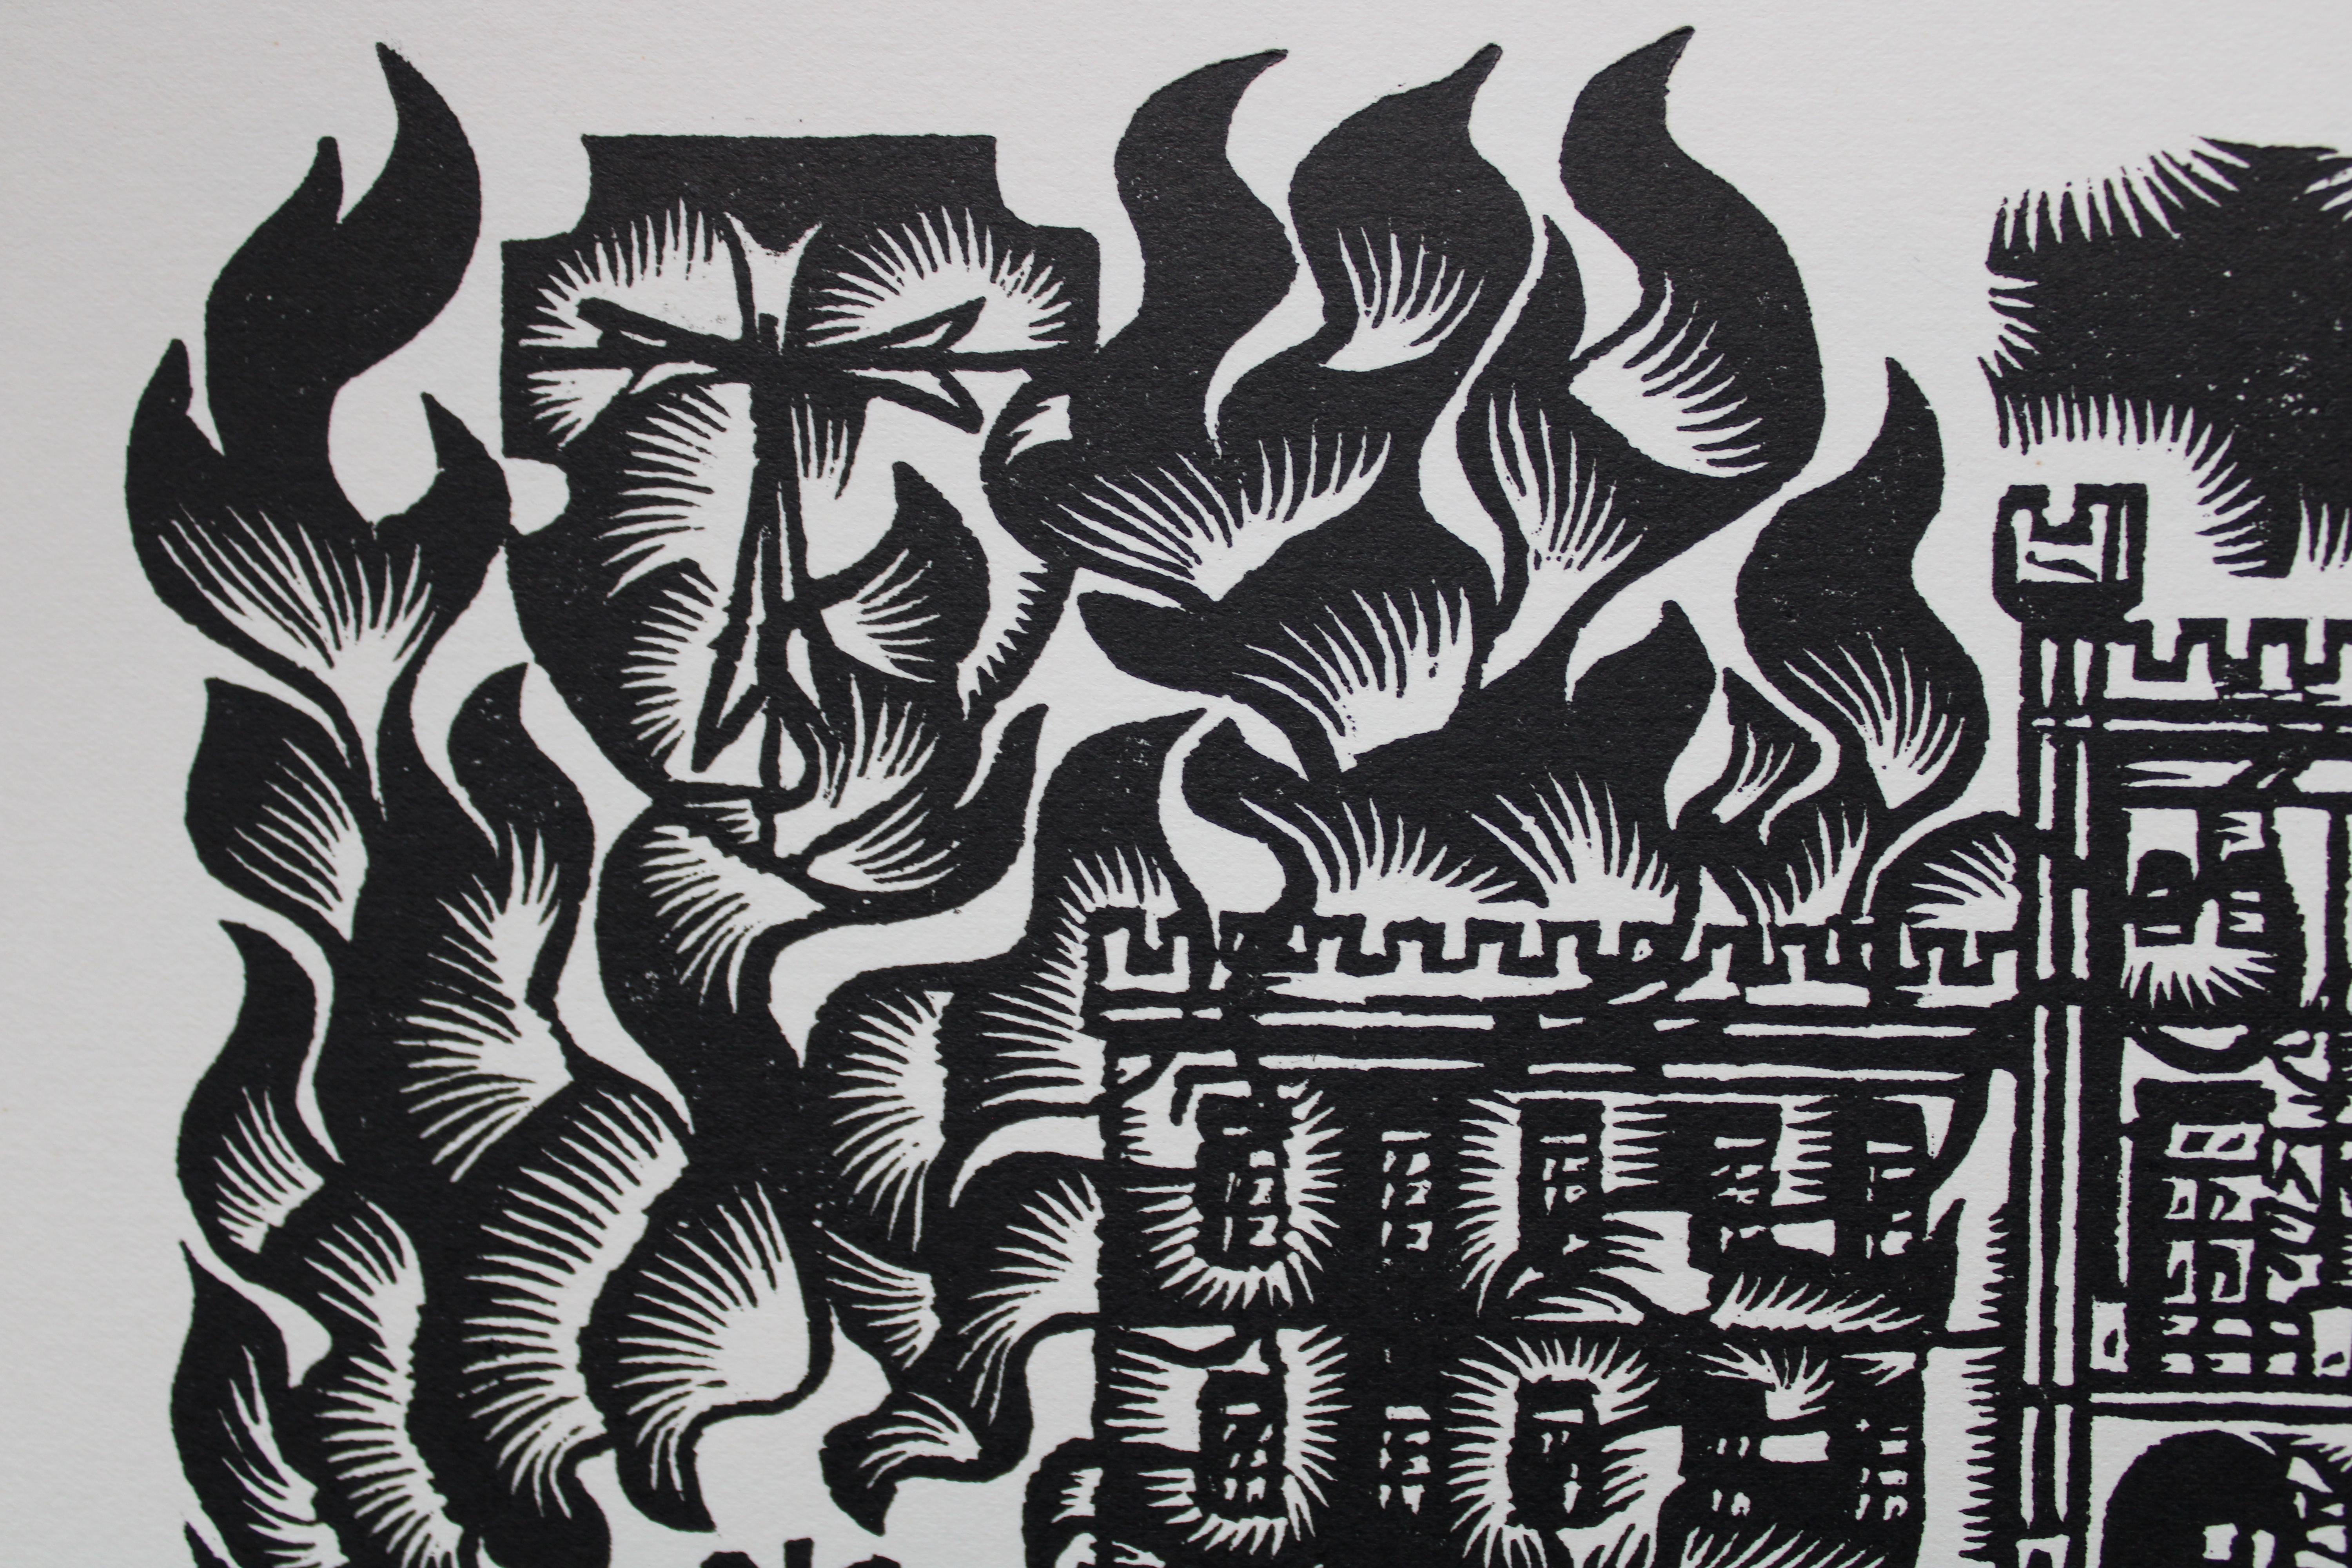 Ein Kampf gegen die Bürgermeister. 1982. Papier, Linolschnitt, 25x34 cm (Grau), Print, von Dainis Rozkalns